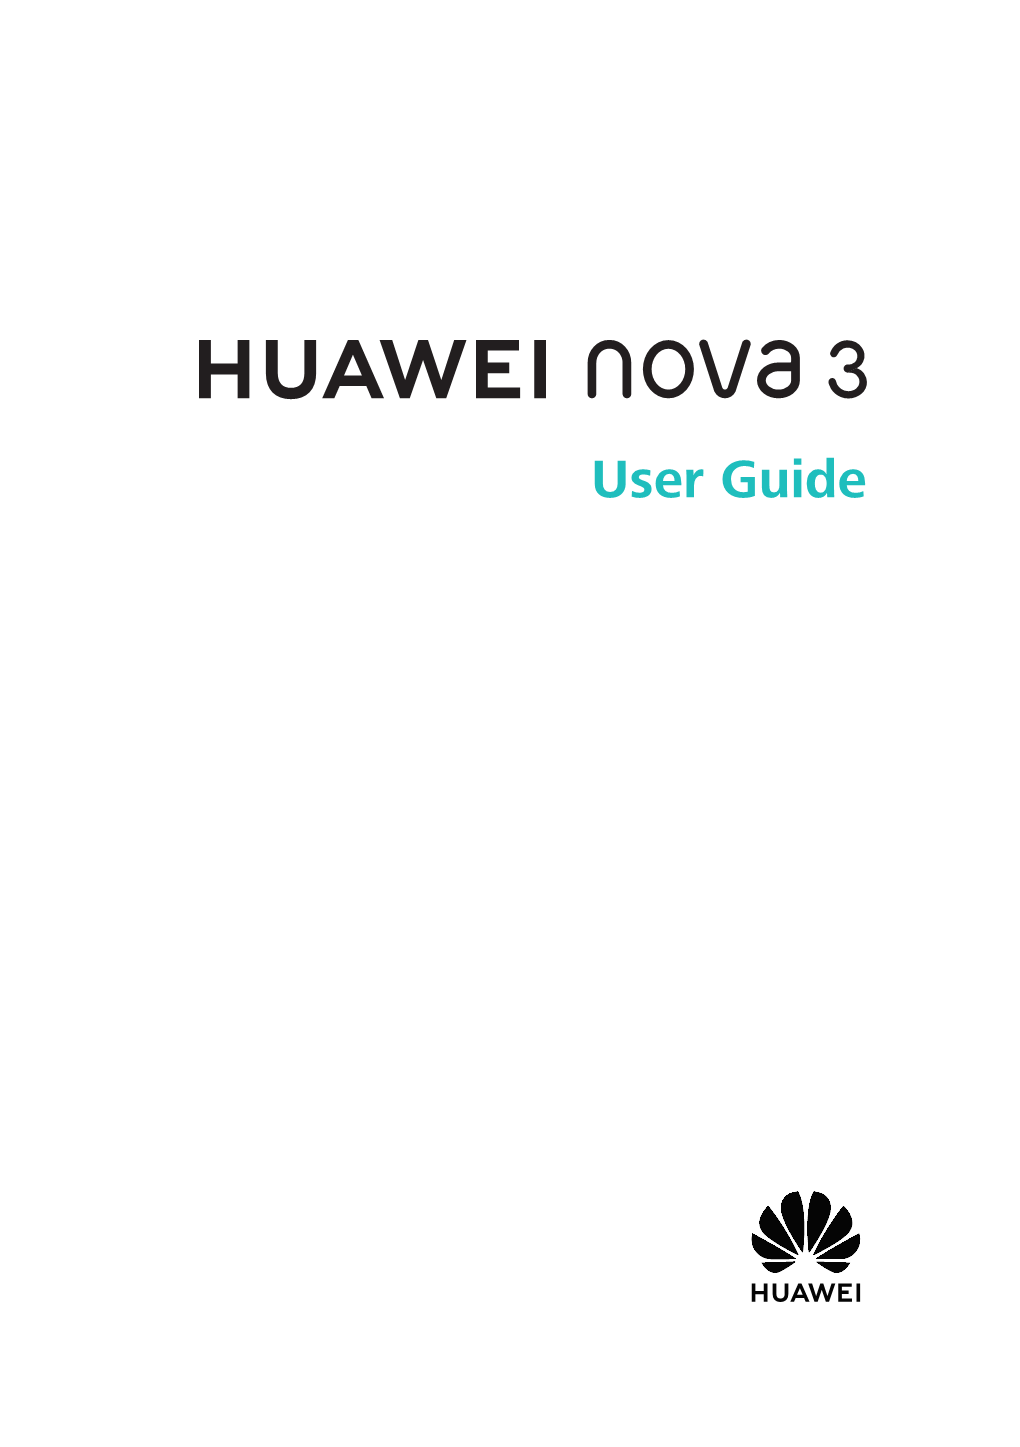 HUAWEI Nova 3 User Guide